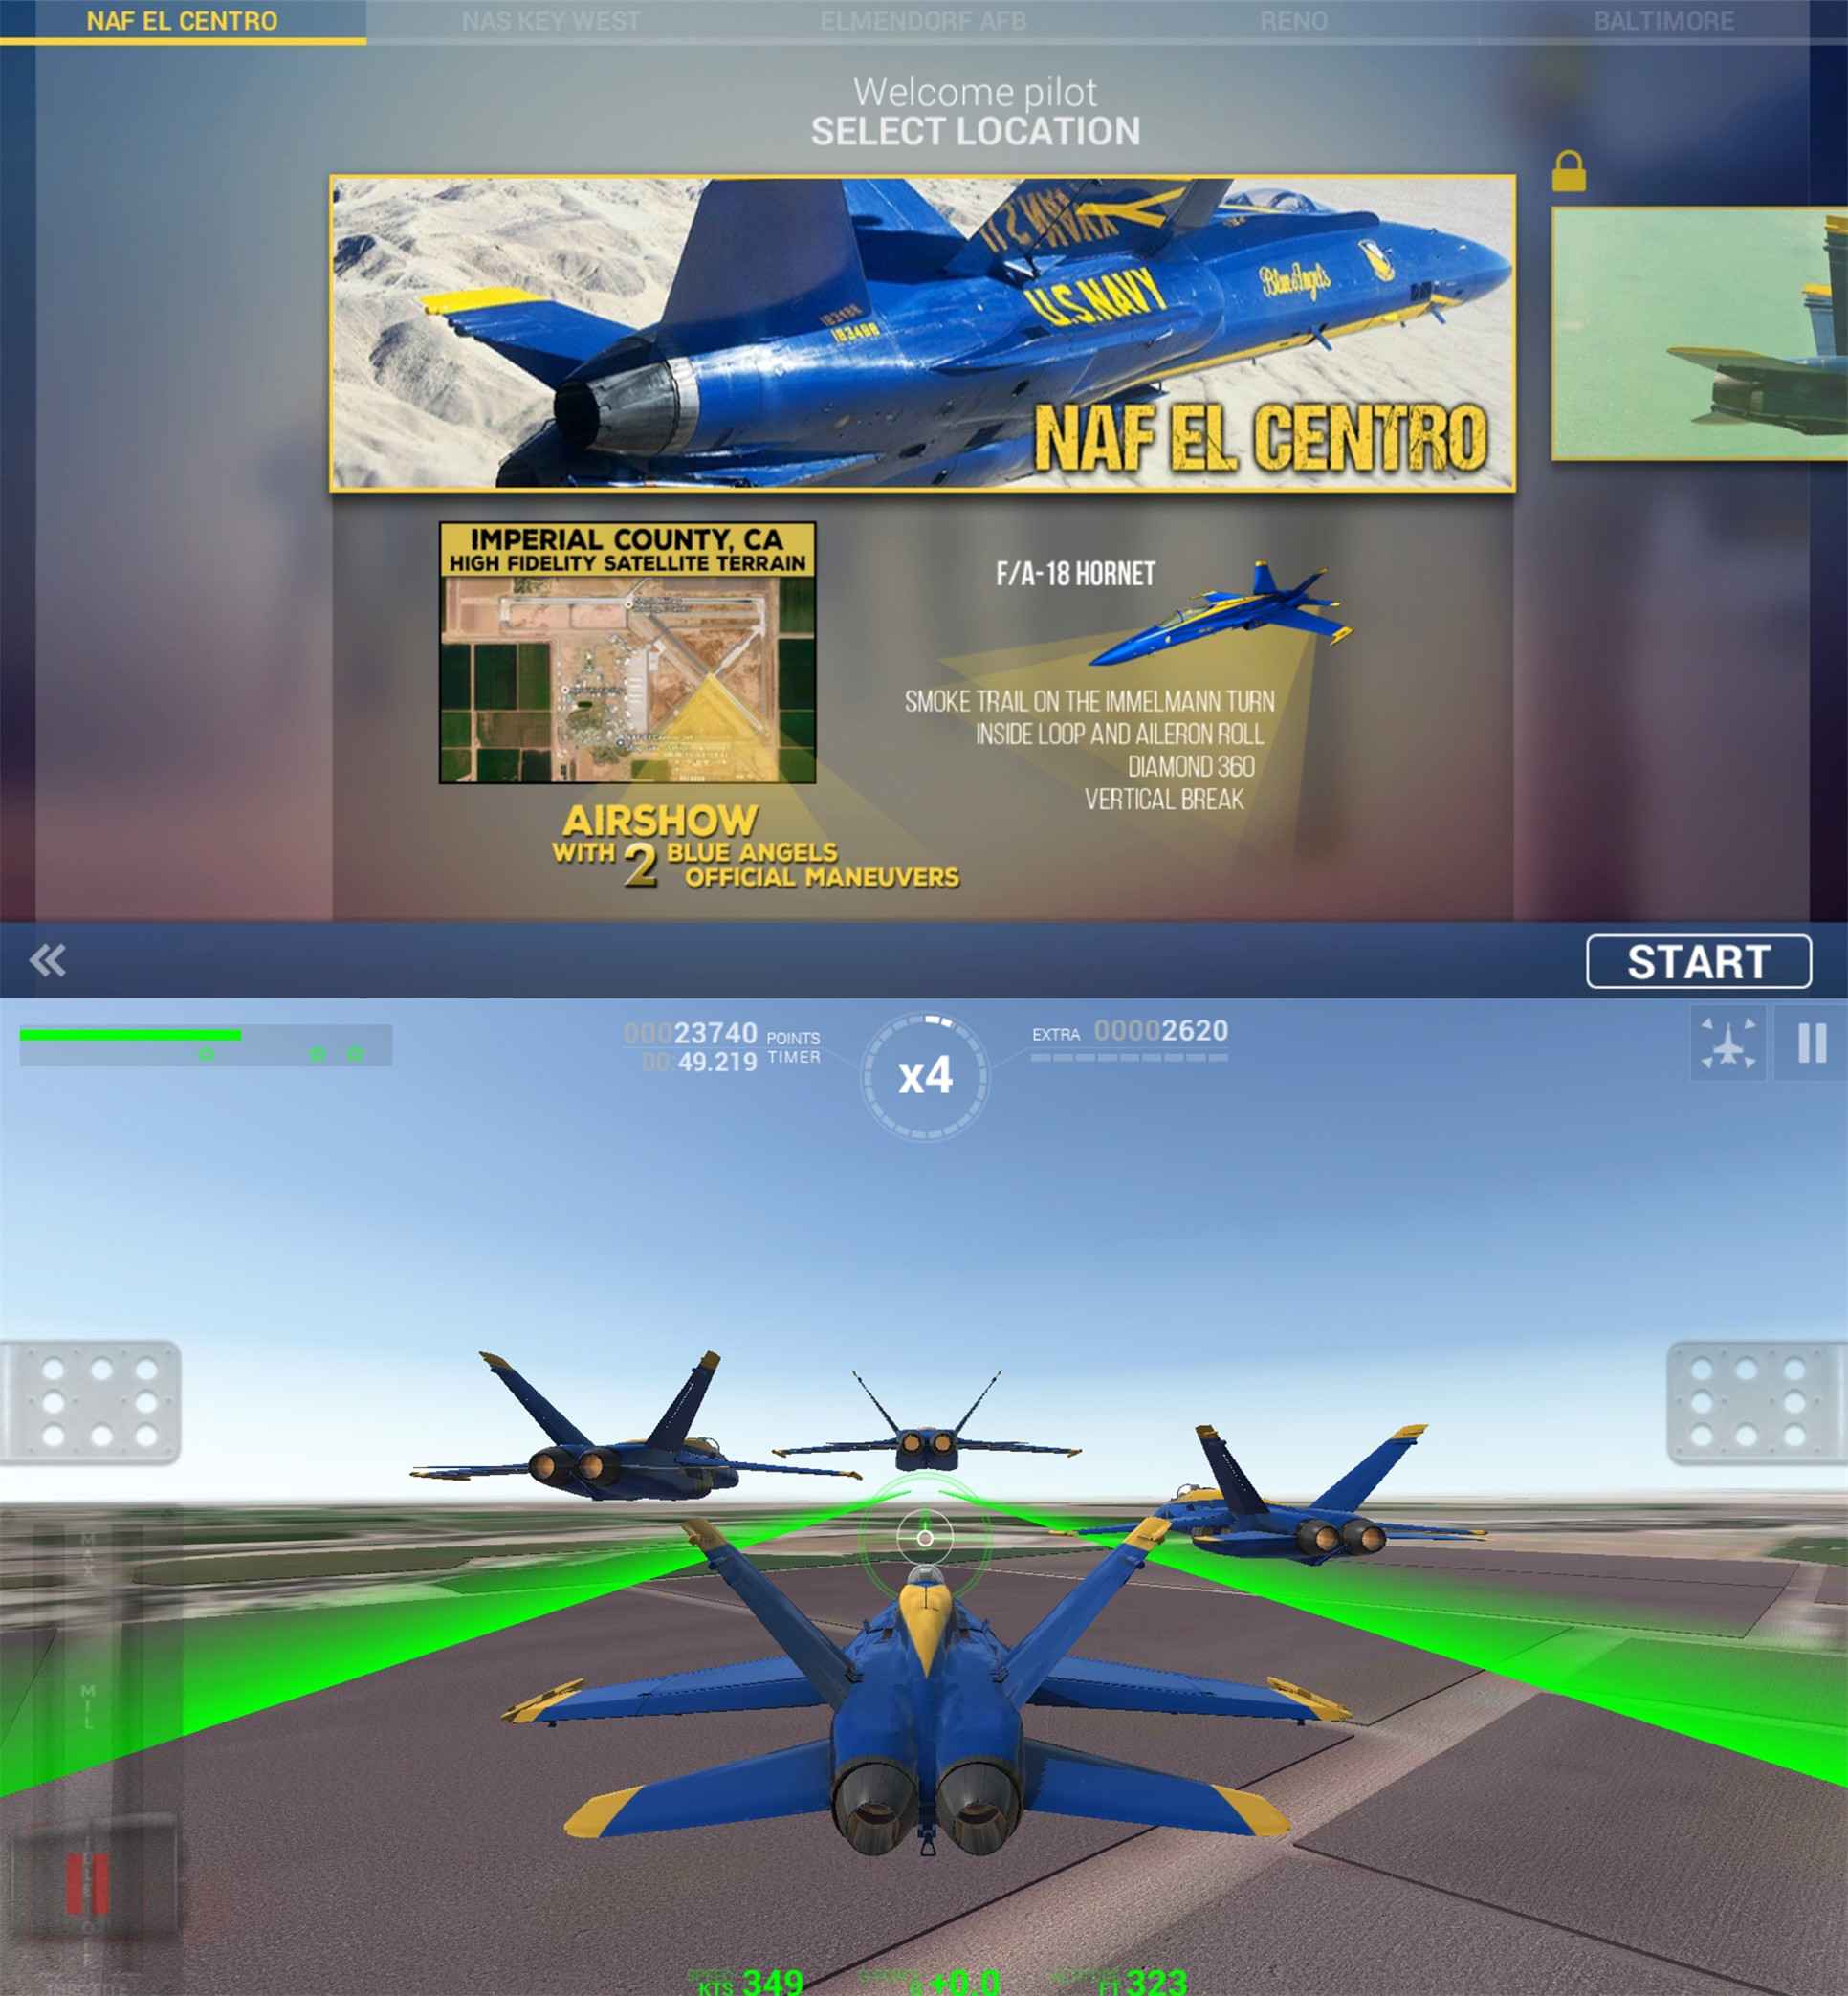 蓝色天使特技飞行 真实模拟各种飞行特技